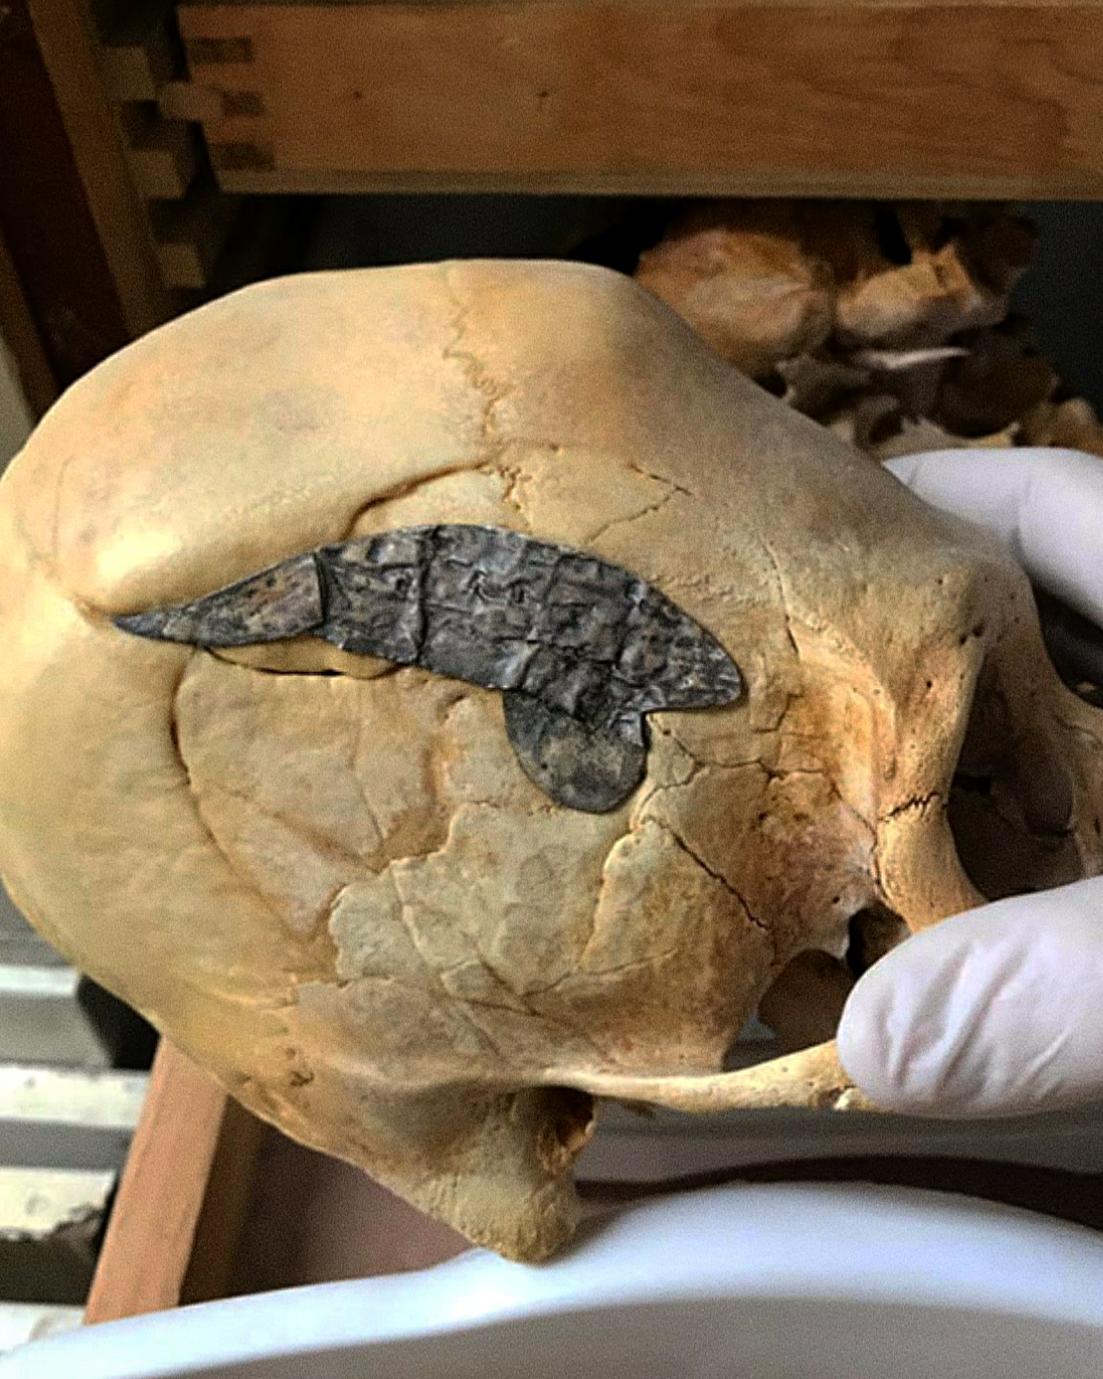 Peruaanse langwerpige schedel die een schedeloperatie onderging en waarbij metaal chirurgisch werd geïmplanteerd om de botten te binden nadat hij ongeveer 2,000 jaar geleden in de strijd gewond was geraakt